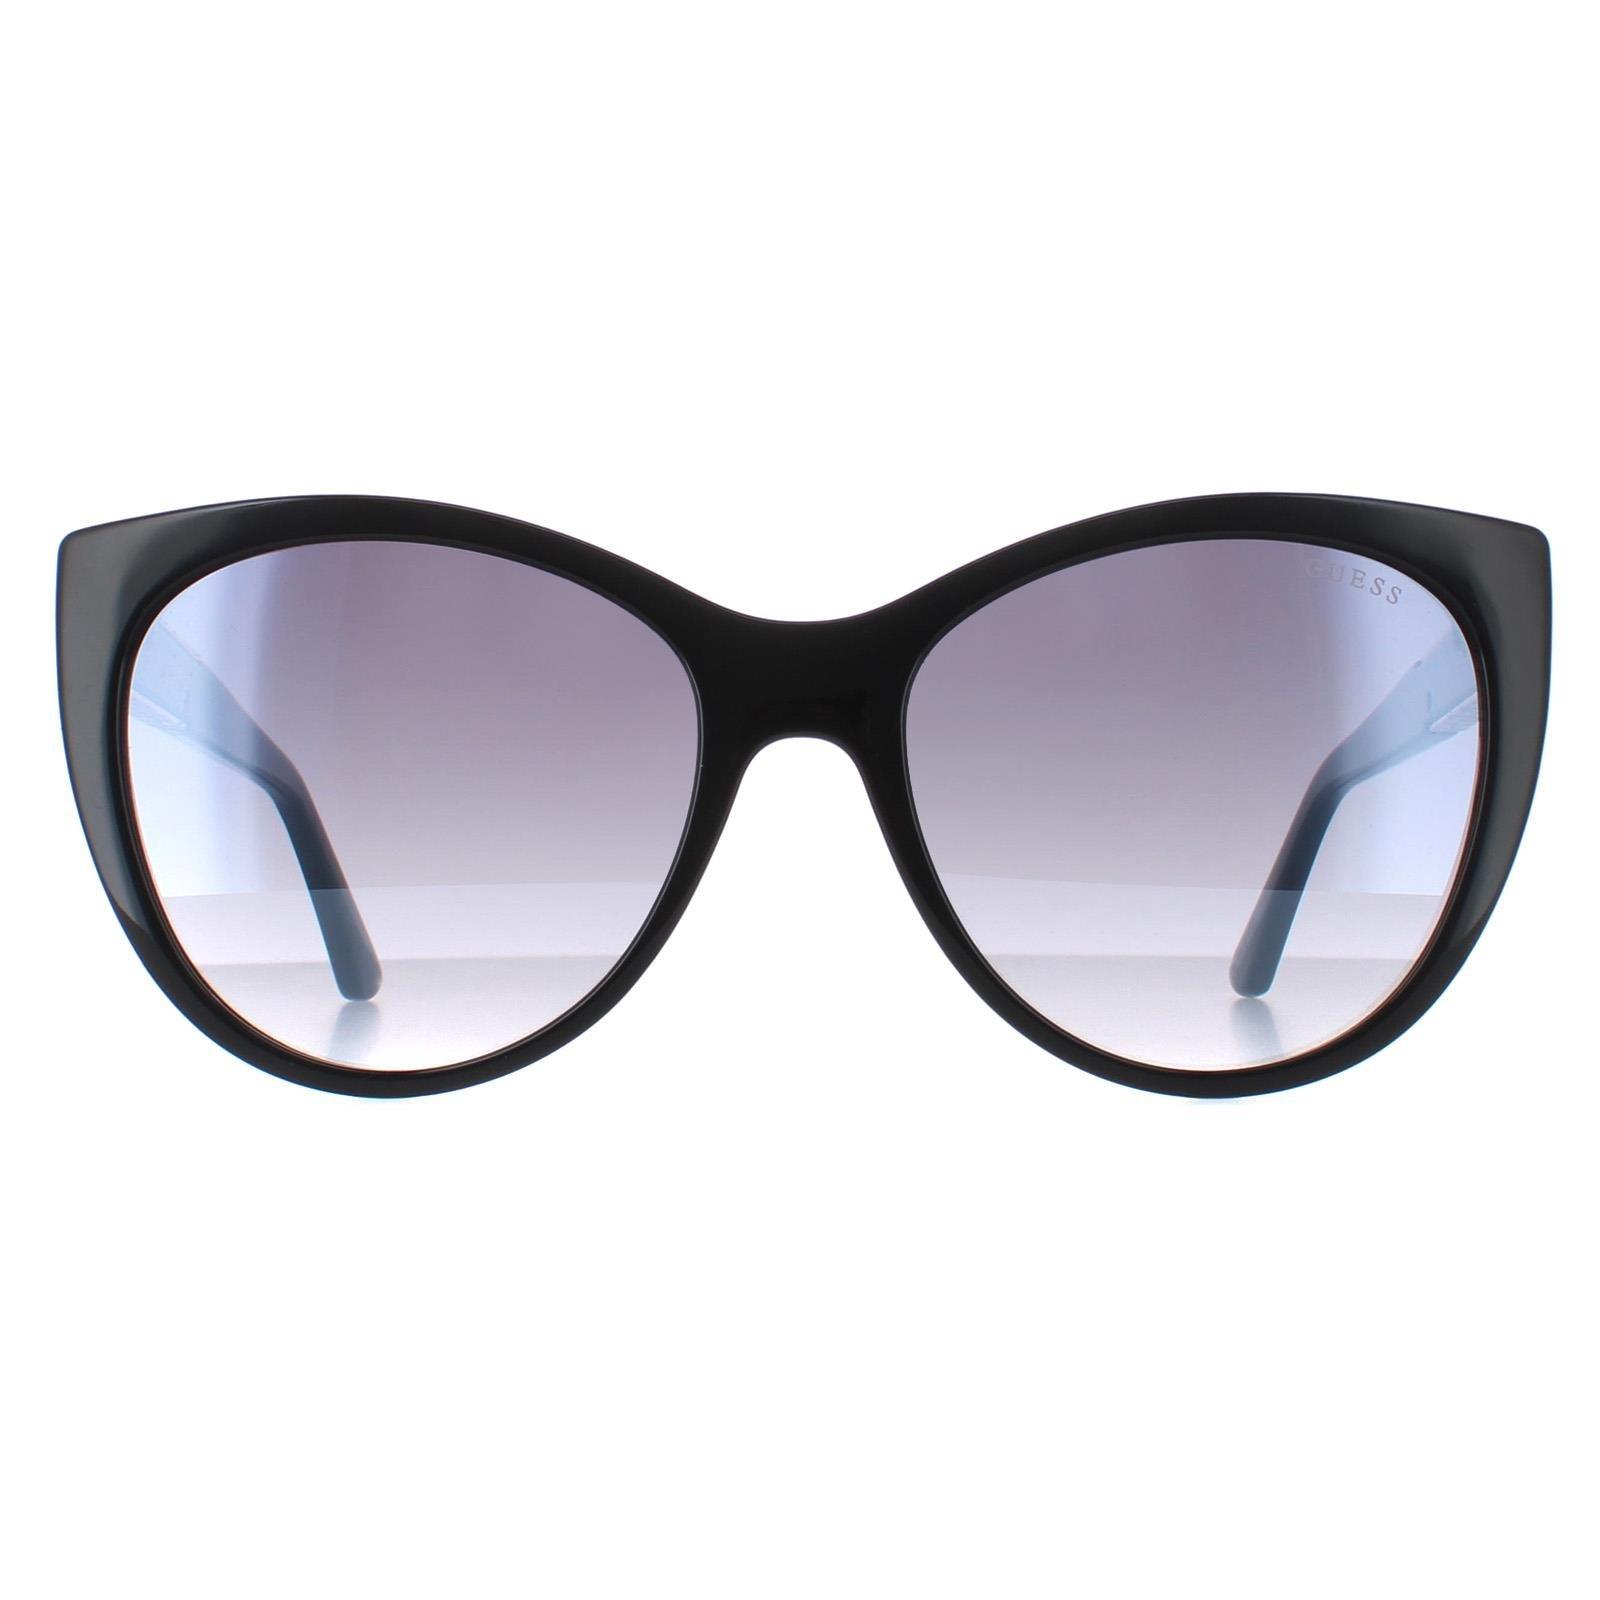 Кошачий глаз Блестящий черный дымчатый градиент GF6069 Guess, черный солнцезащитные очки tropical кошачий глаз оправа пластик градиентные для женщин черный